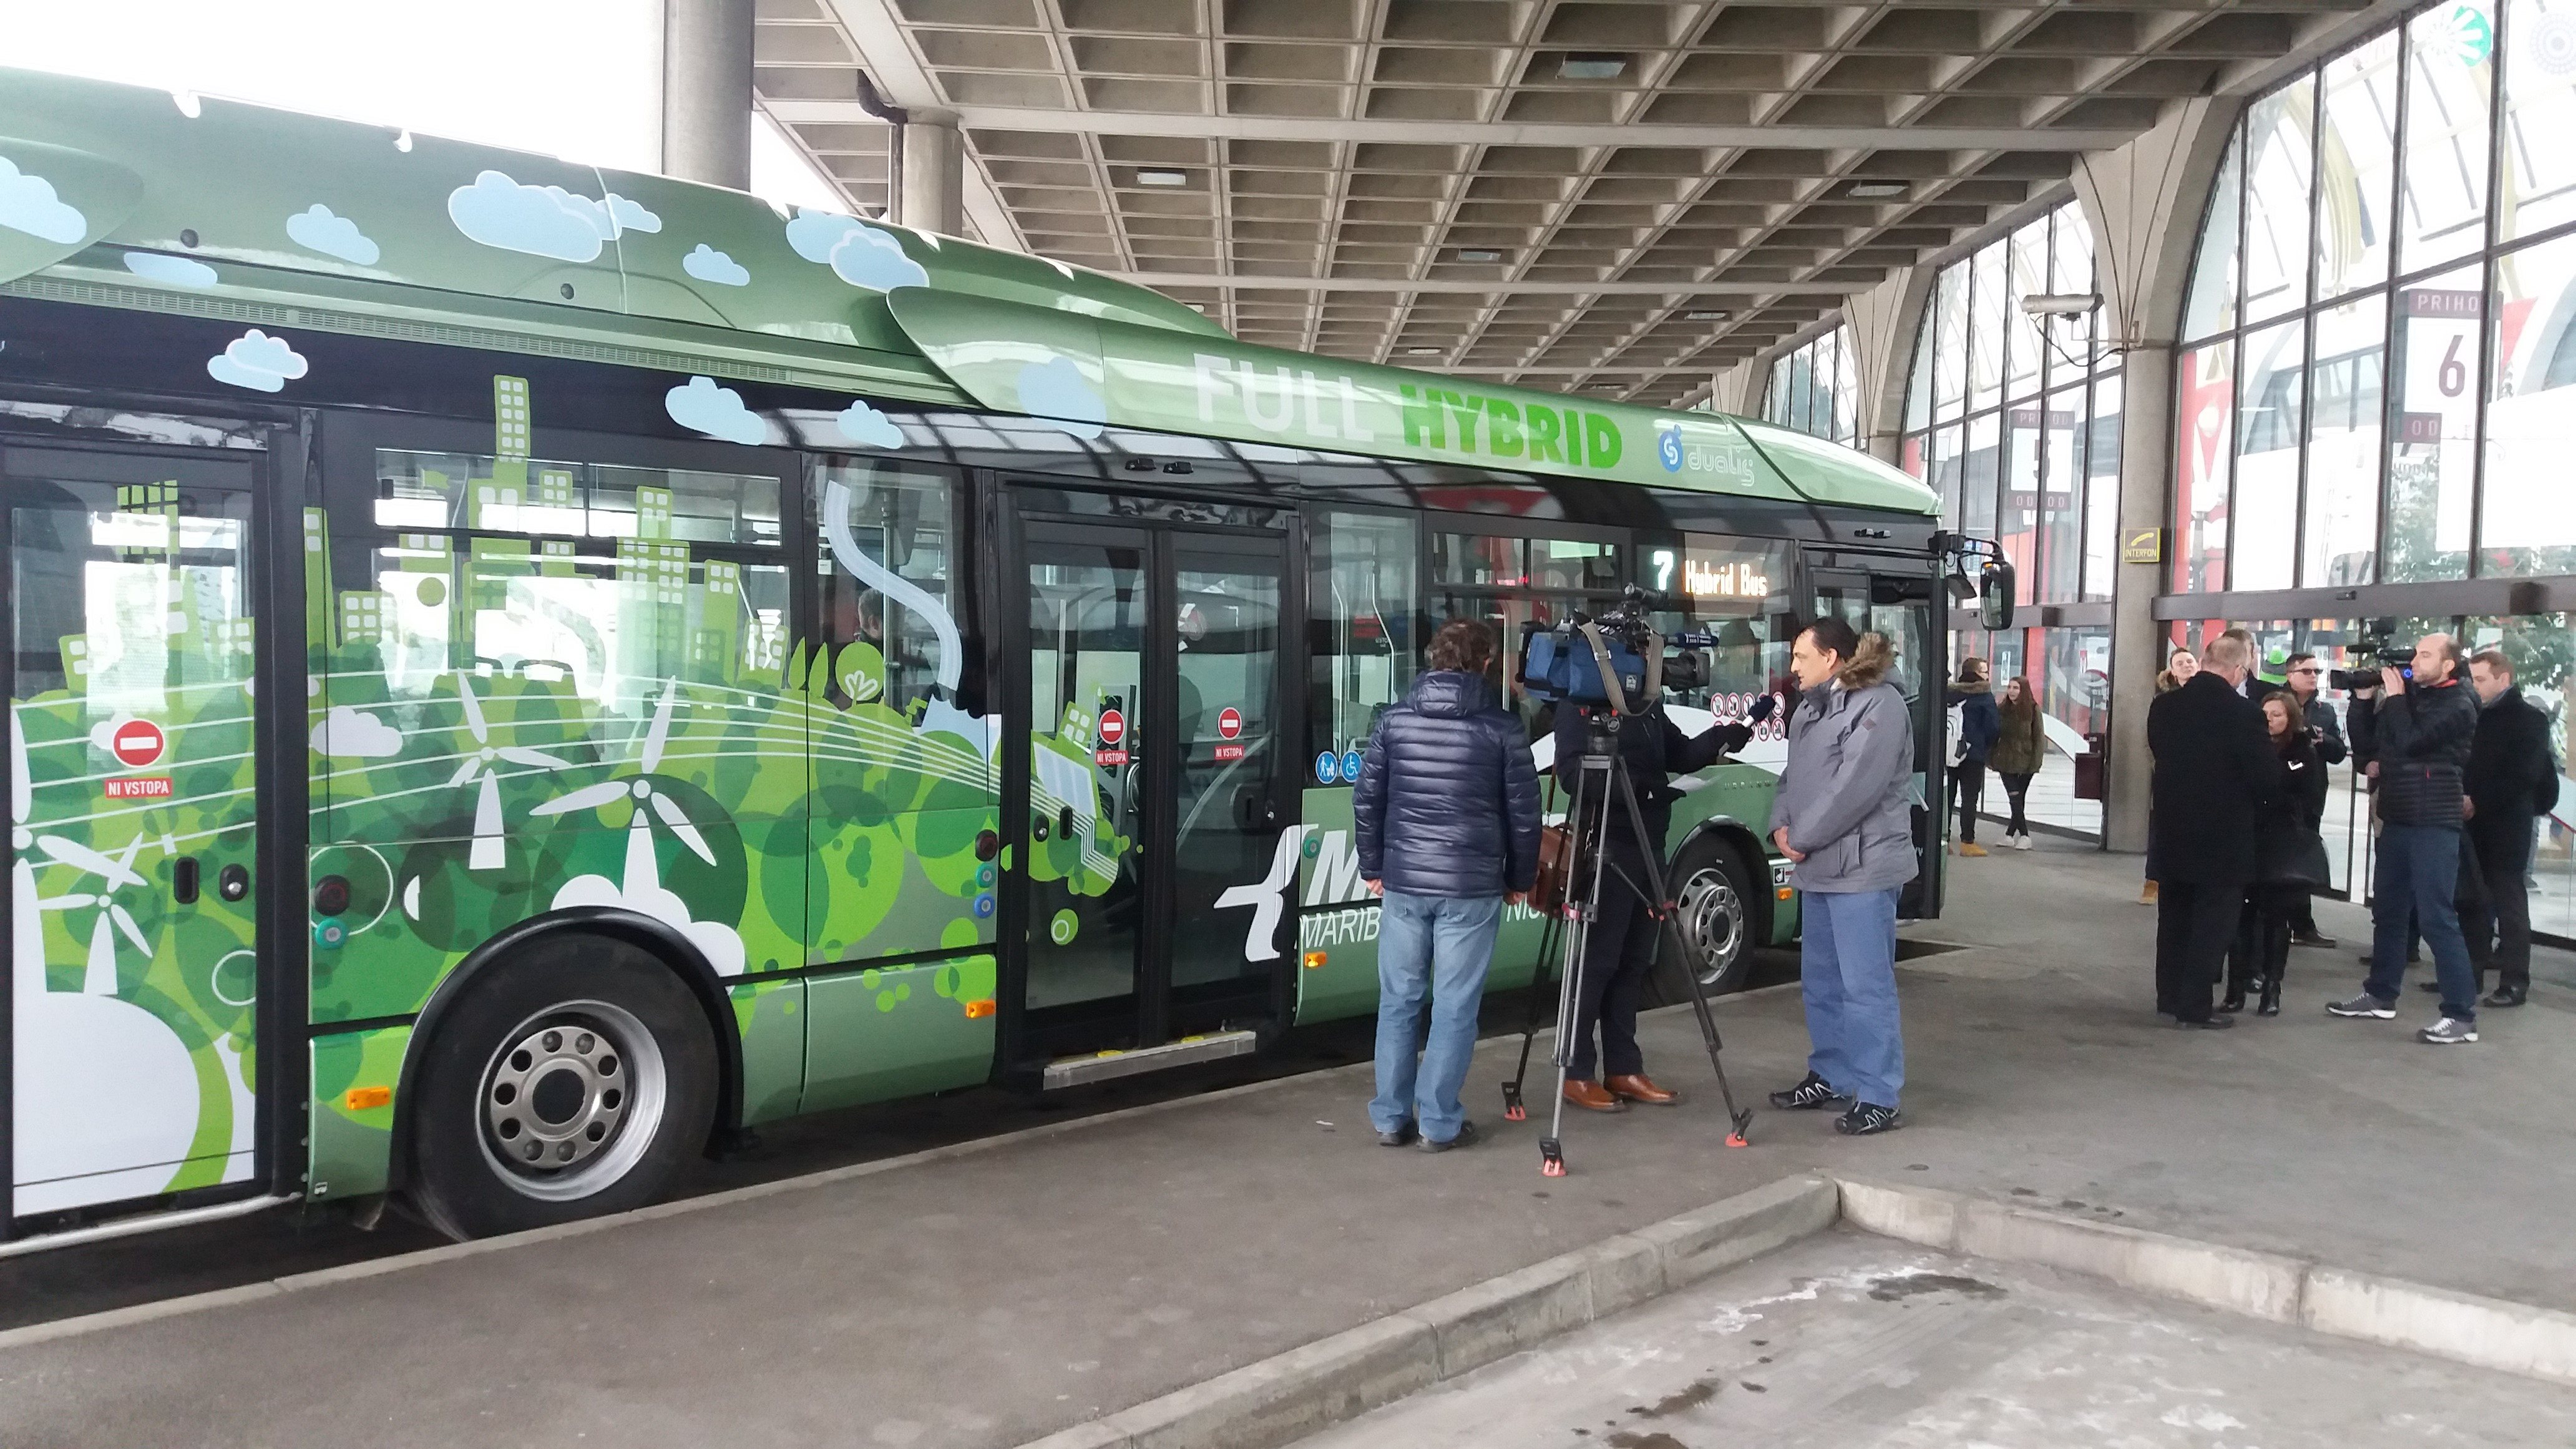  Marprom v mestnem prometu testira avtobus na električni pogon.